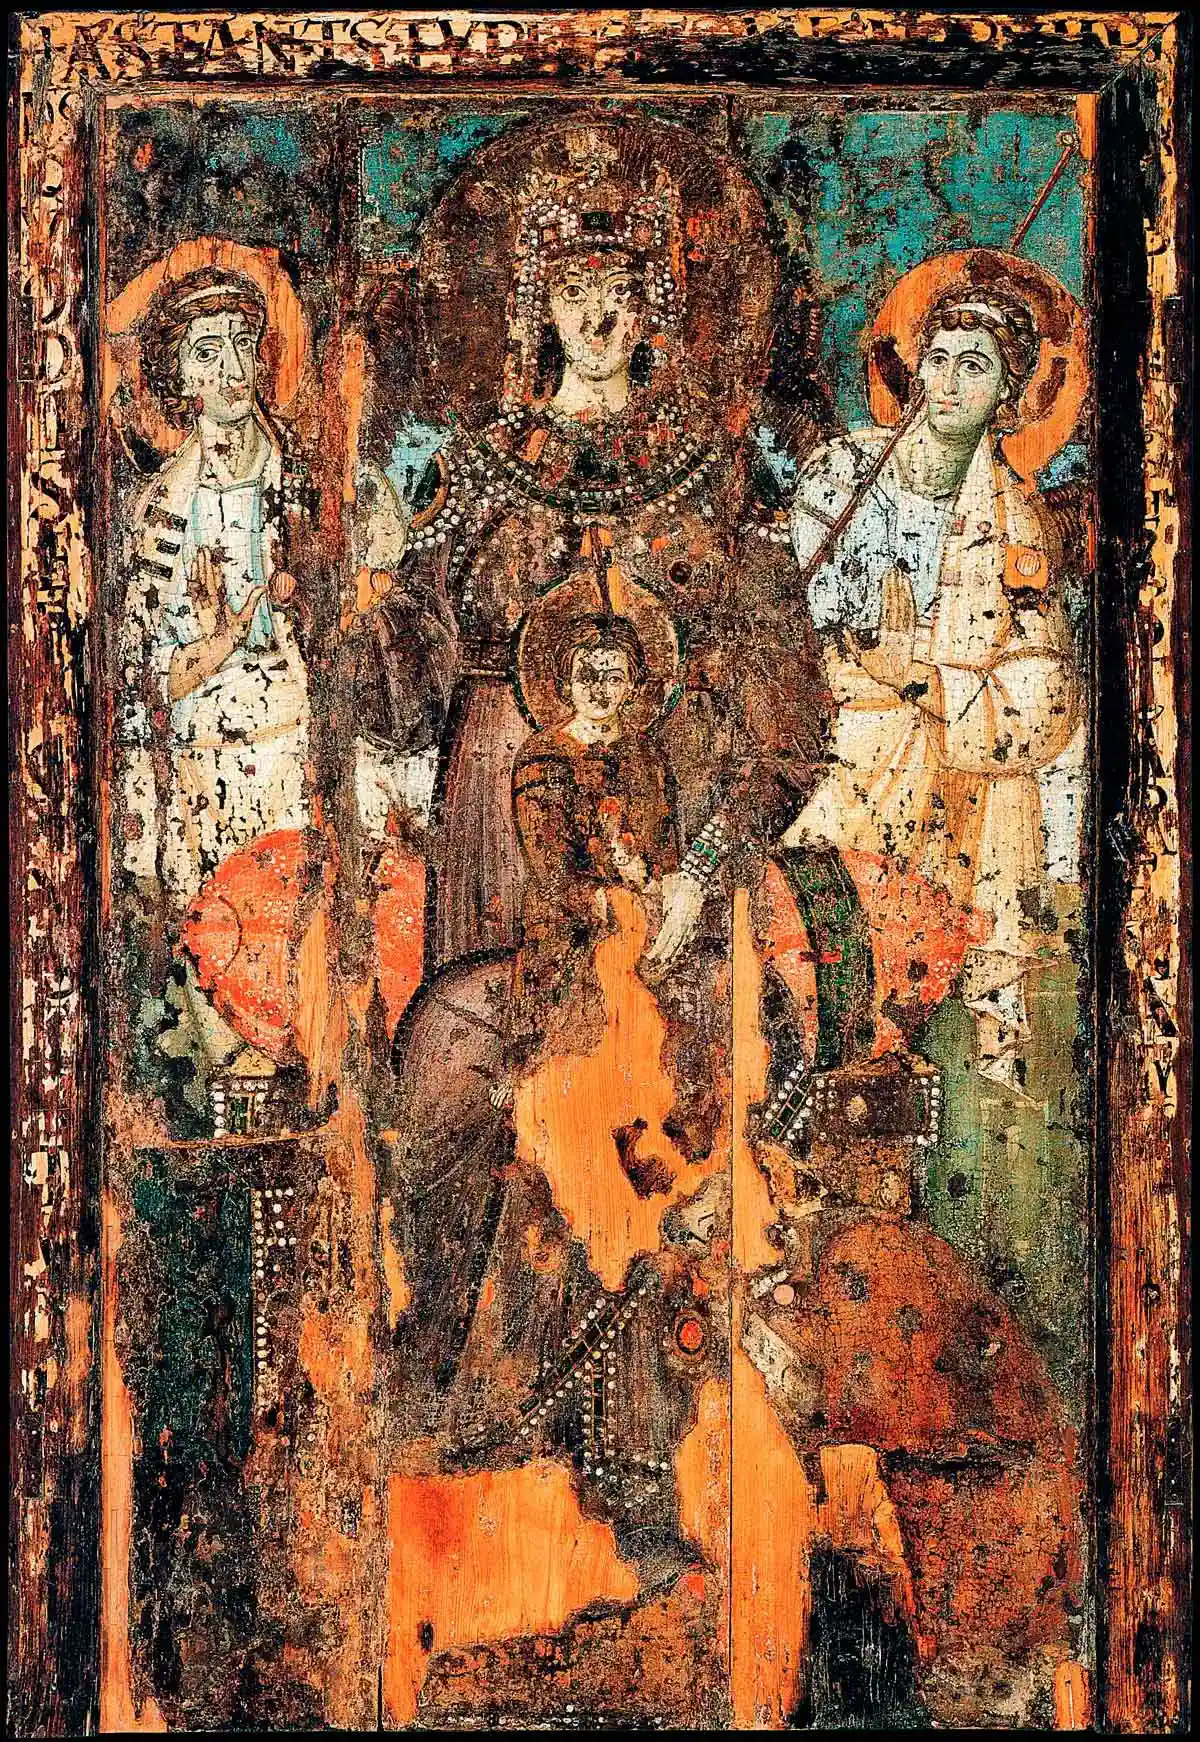 Богородица Милостивая, базилика Санта Мария ин Трастевере